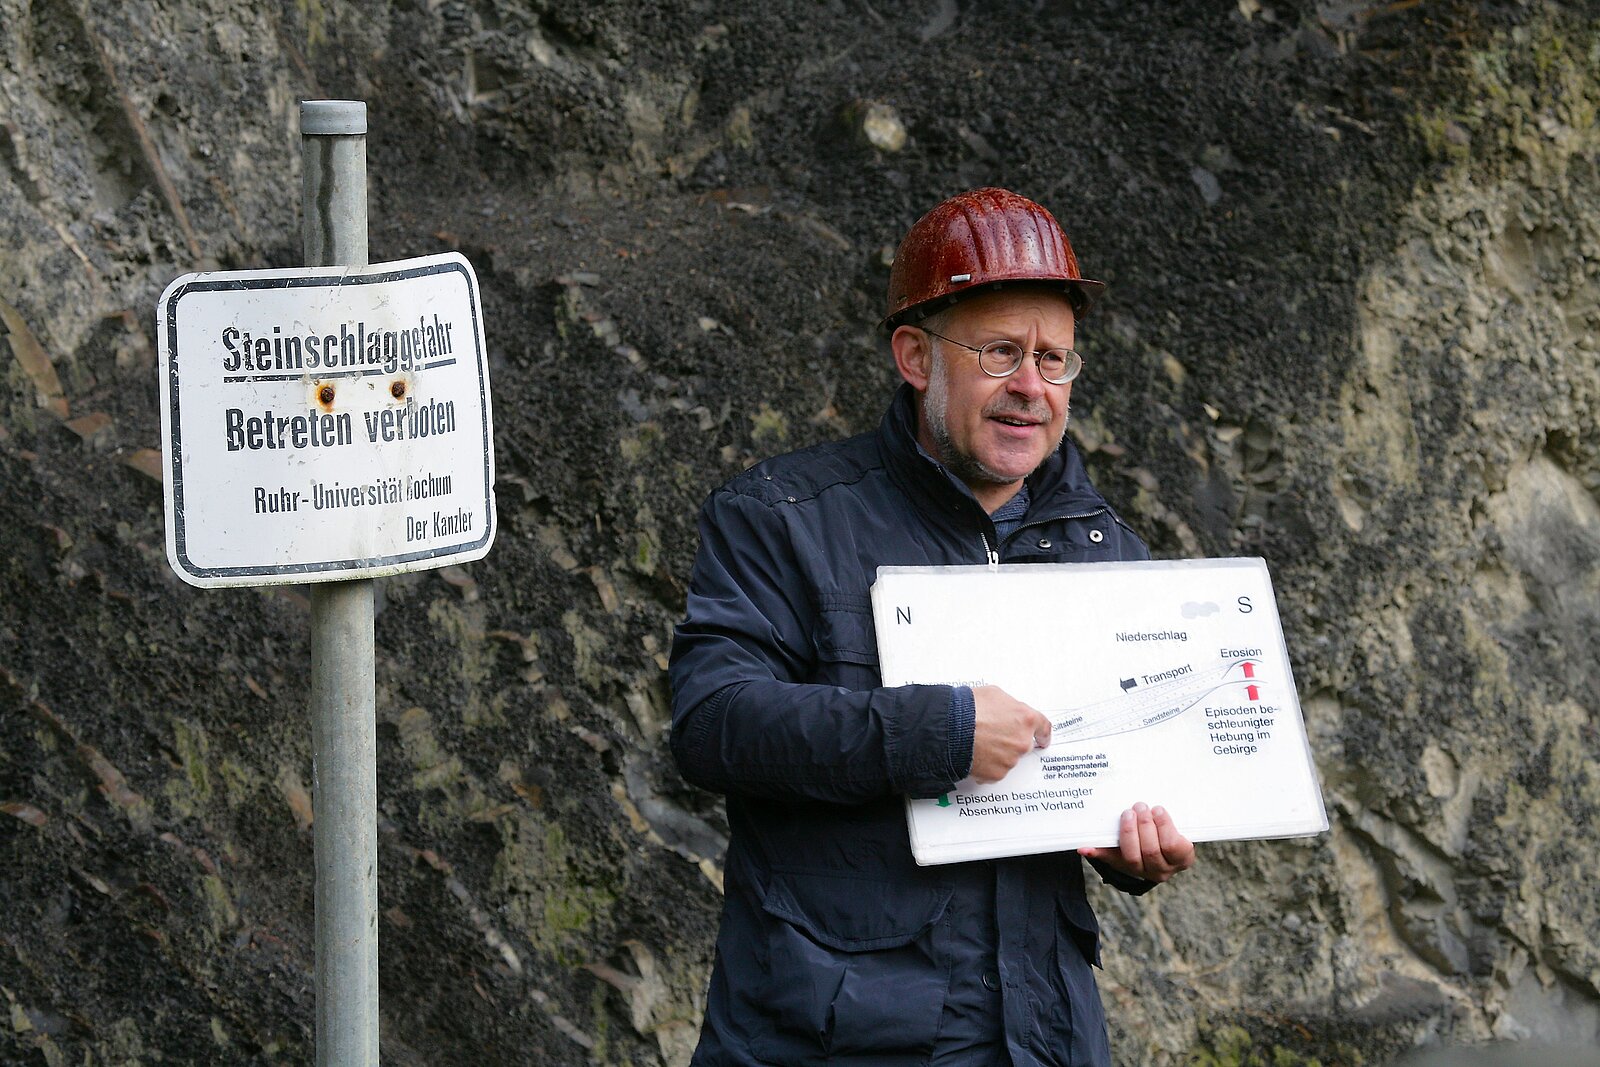 Mann mit Helm und Buch vor Felswand